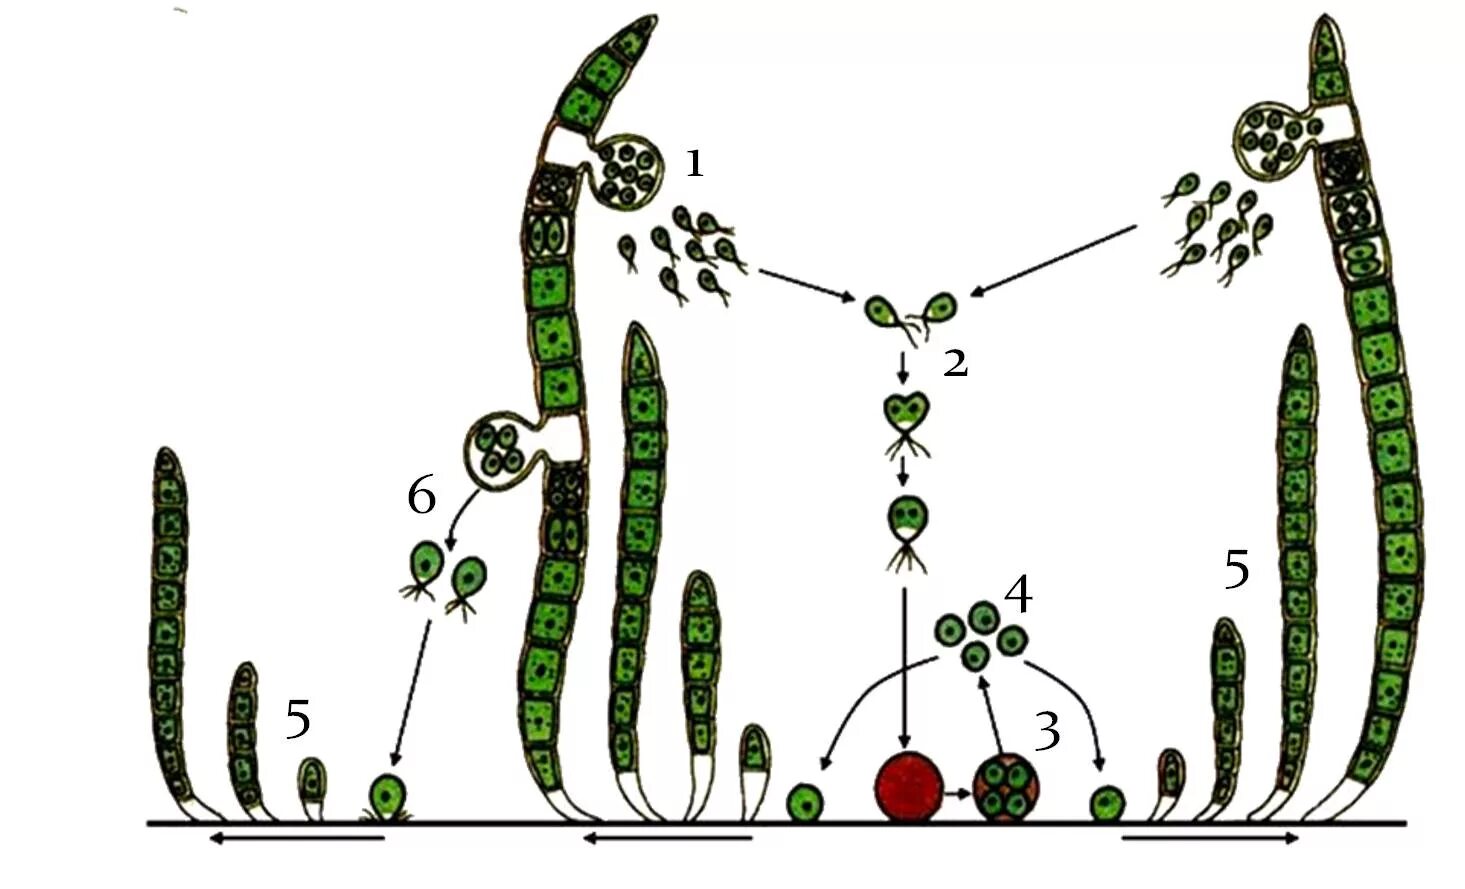 Жизненный цикл овощных растений по маркову. Улотрикс цикл размножения. Размножение водорослей схема улотрикс. Цикл развития улотрикса схема. Жизненный цикл улотрикса схема.